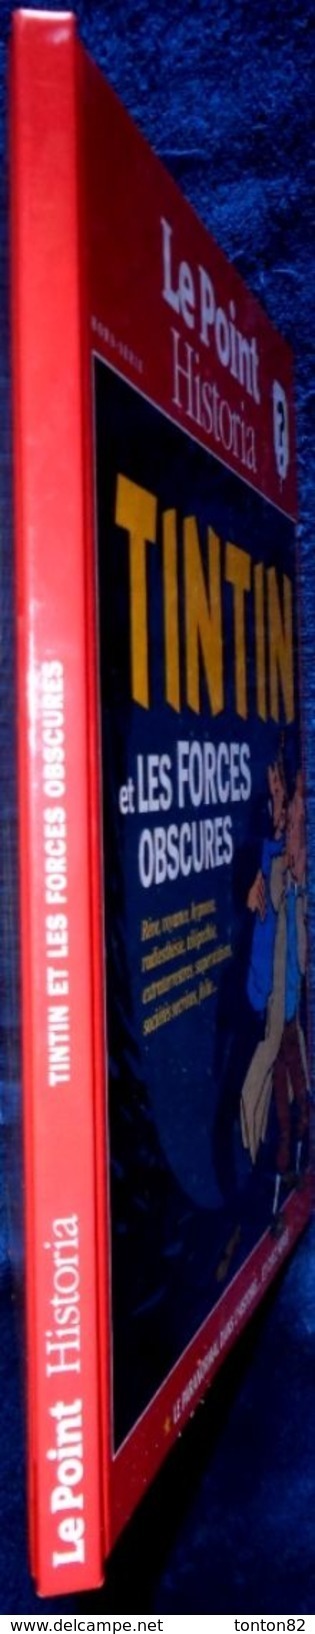 Le Point / Historia Hors Série - TINTIN Et Les Forces Obscures  - ( 2013 ) . - Tintin